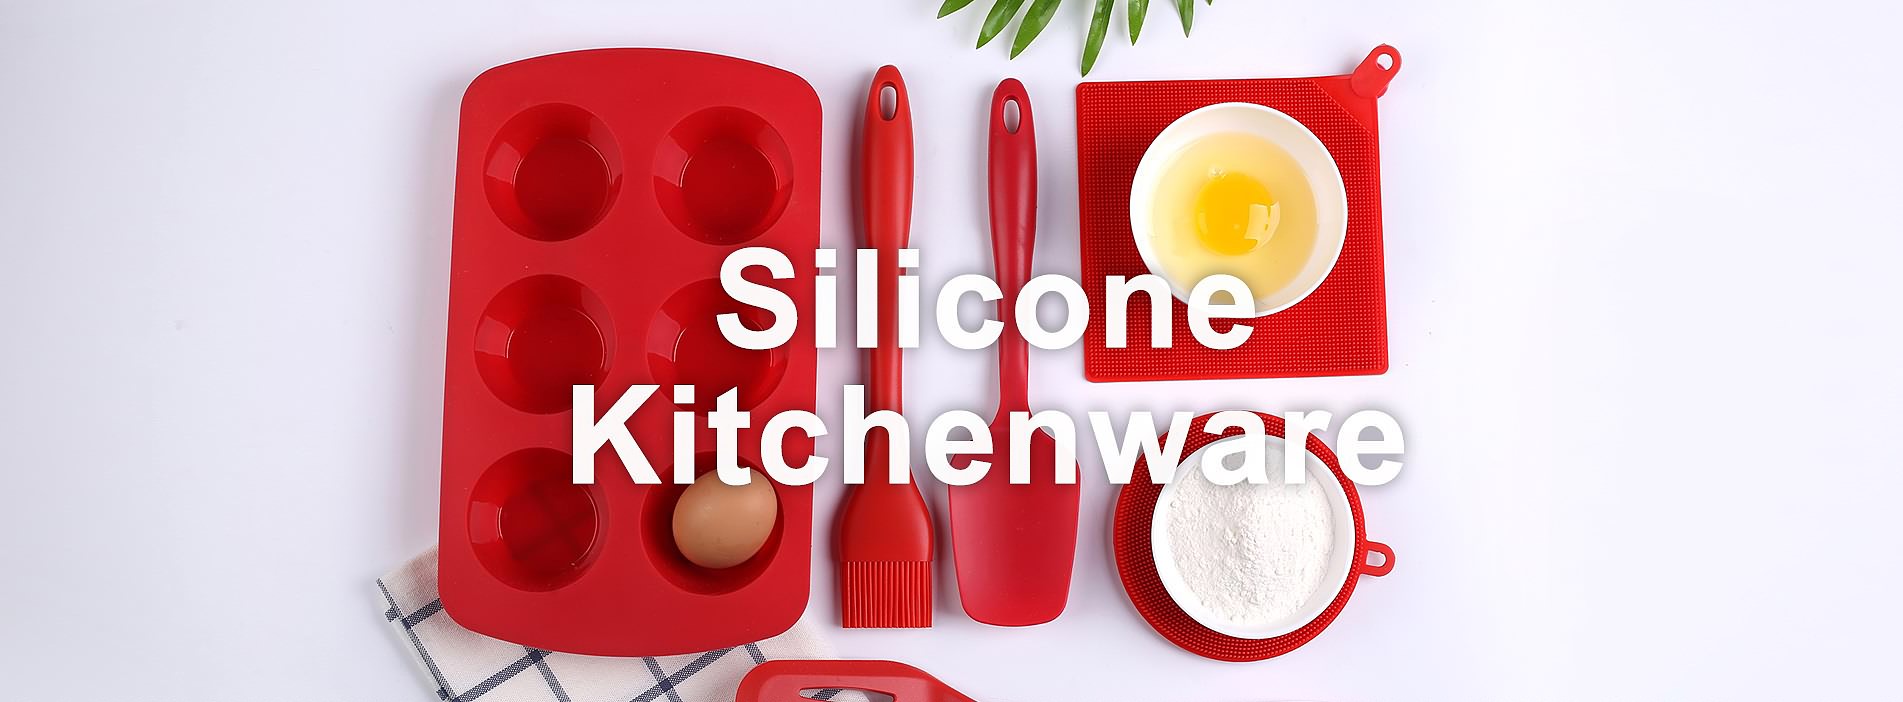 Silicone Kitchenware